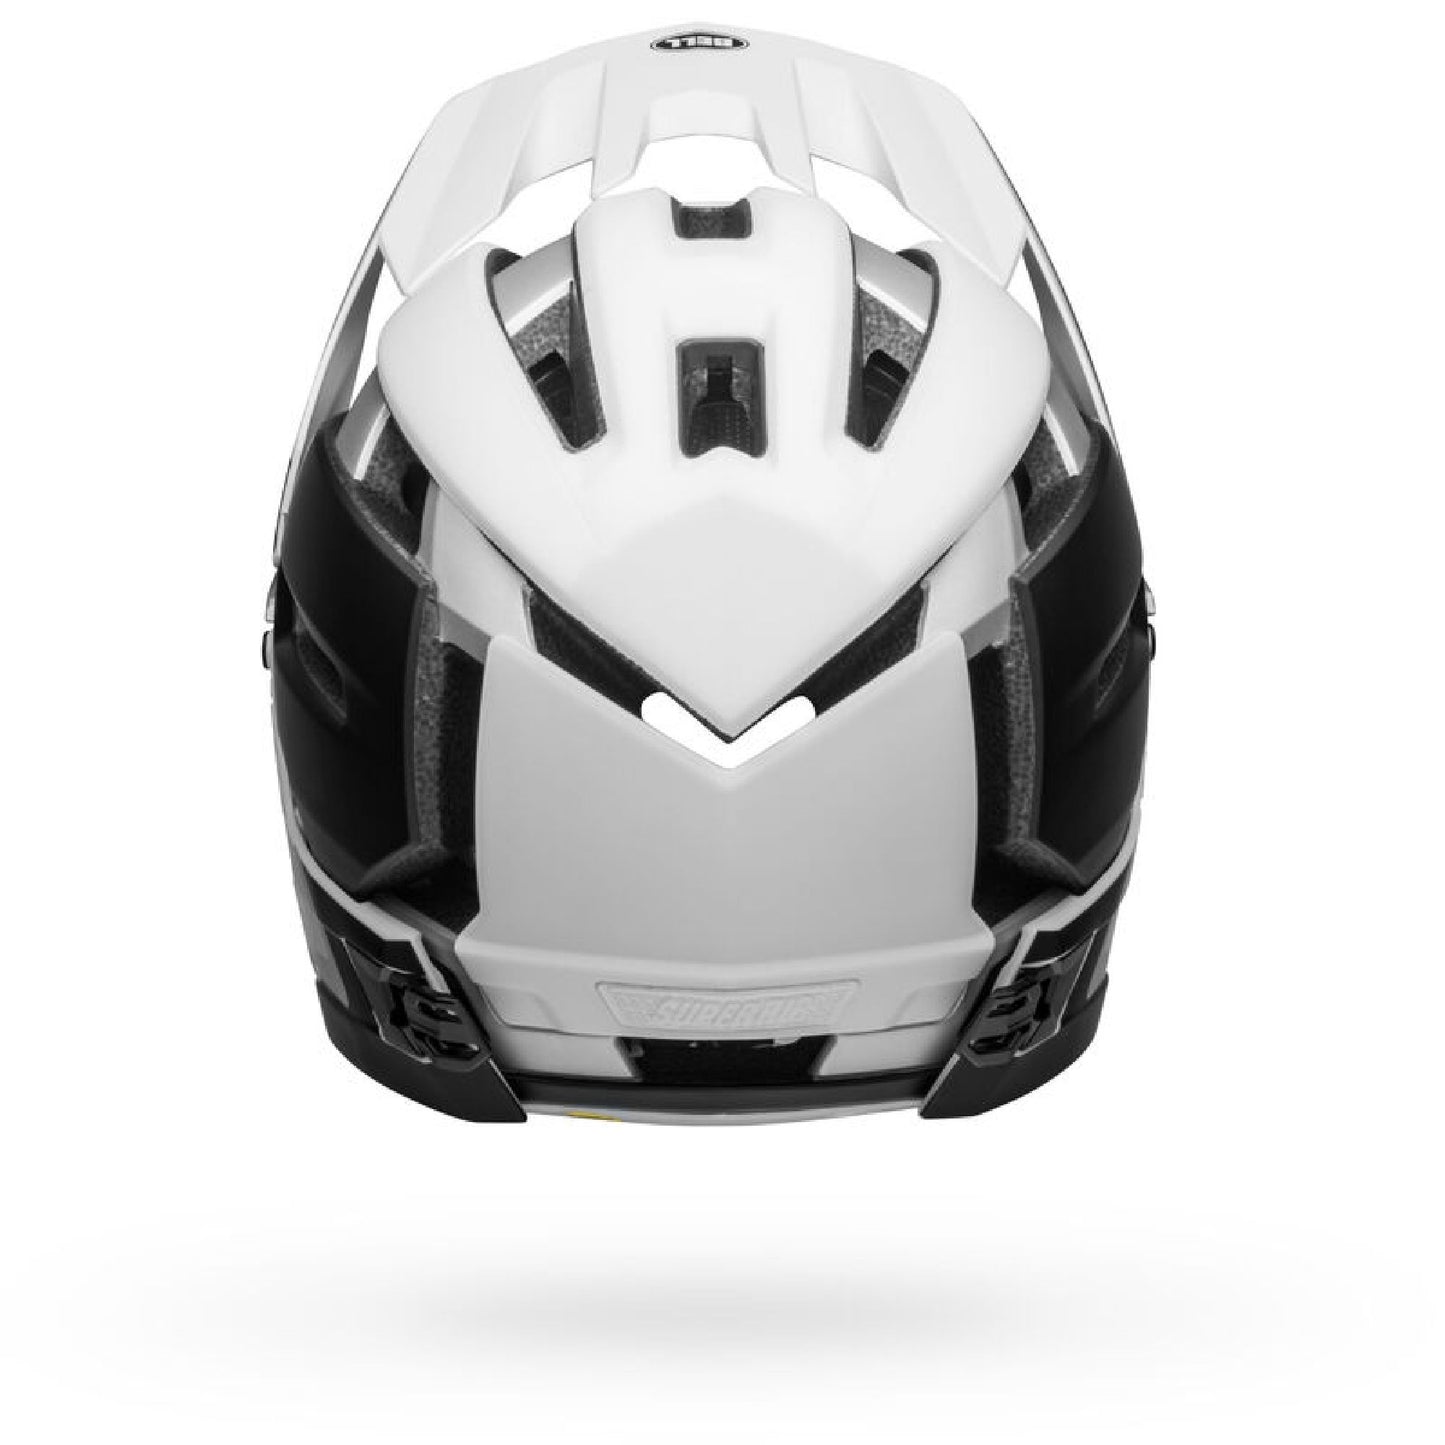 Bell Super Air R Spherical MIPS Helmet Matte Black White - Bell Bike Helmets